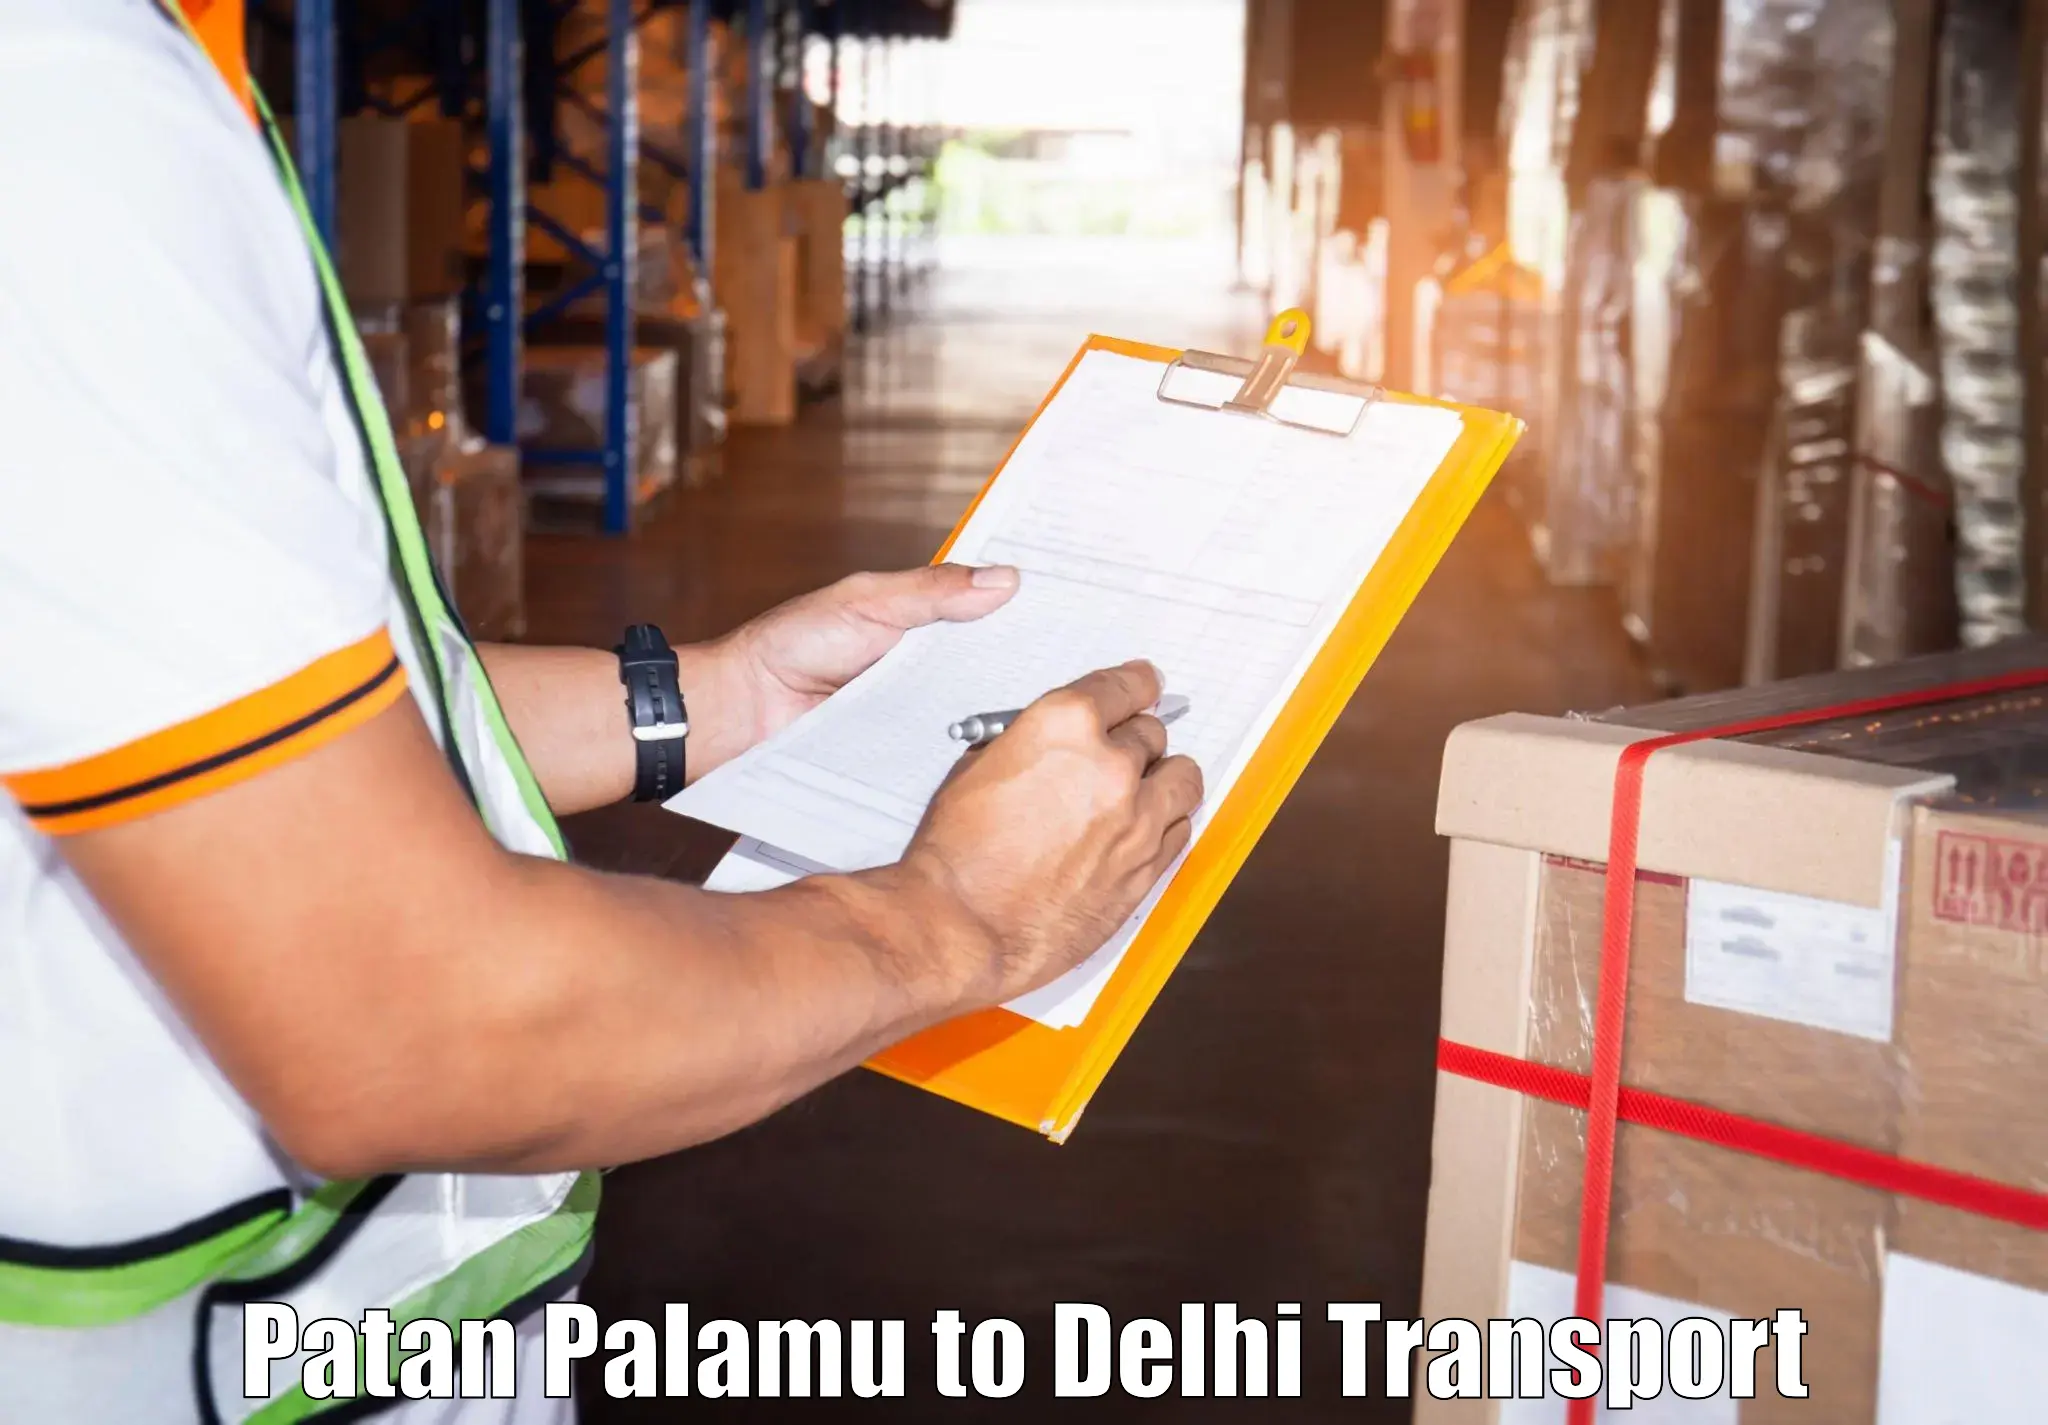 Cargo transport services Patan Palamu to Sarojini Nagar